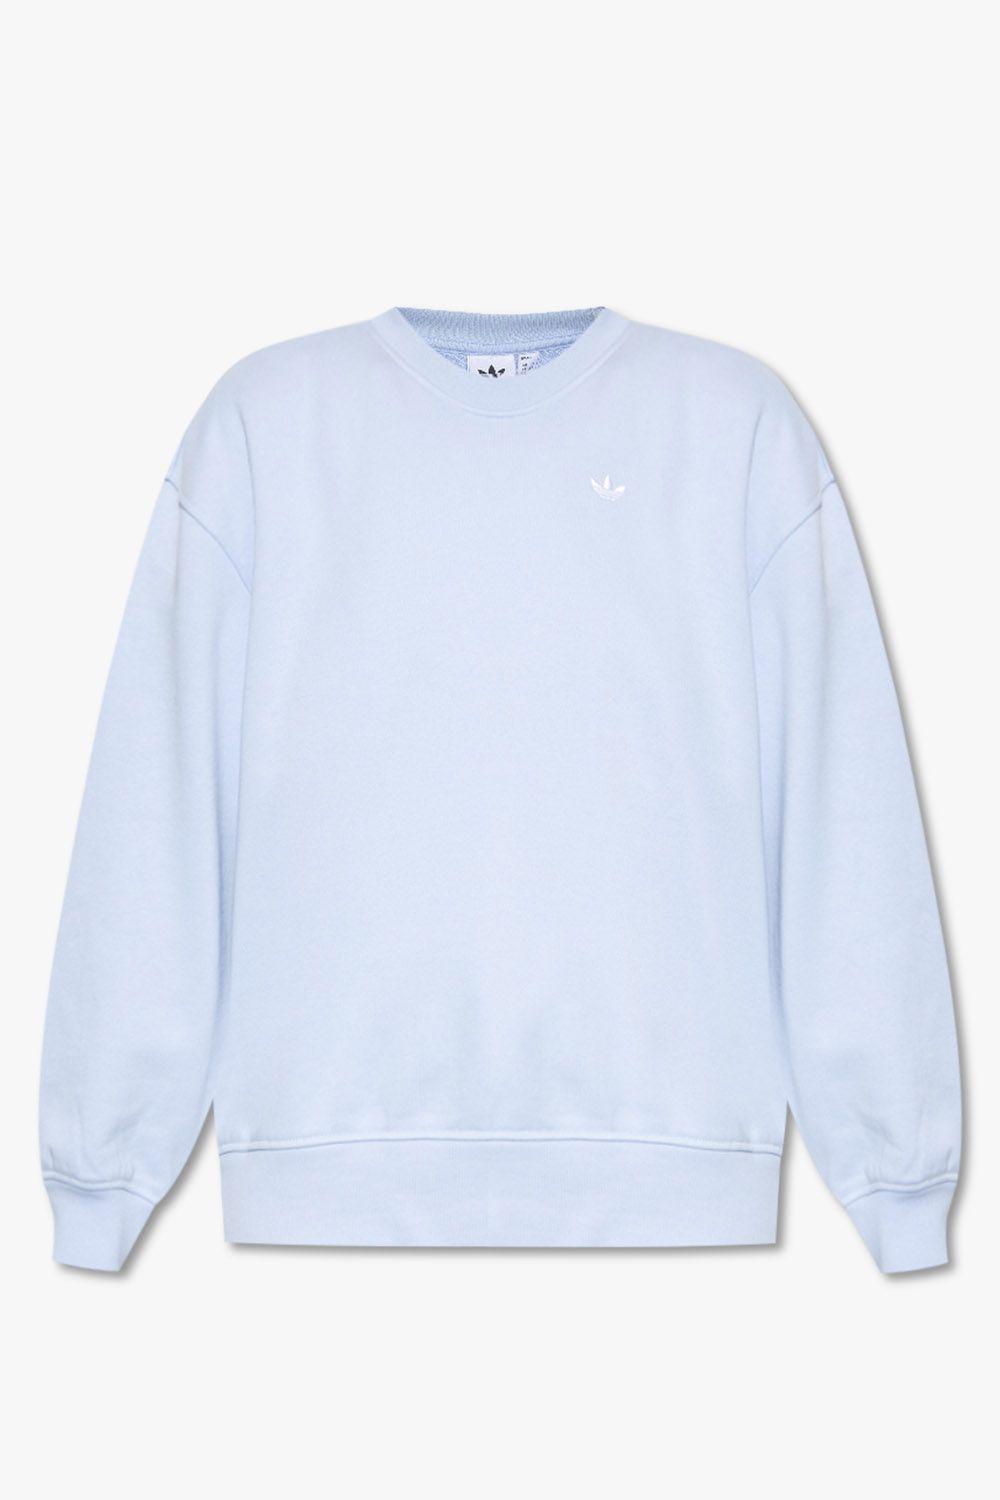 Onderzoek instinct mist adidas Originals Sweatshirt With Logo in Blue | Lyst